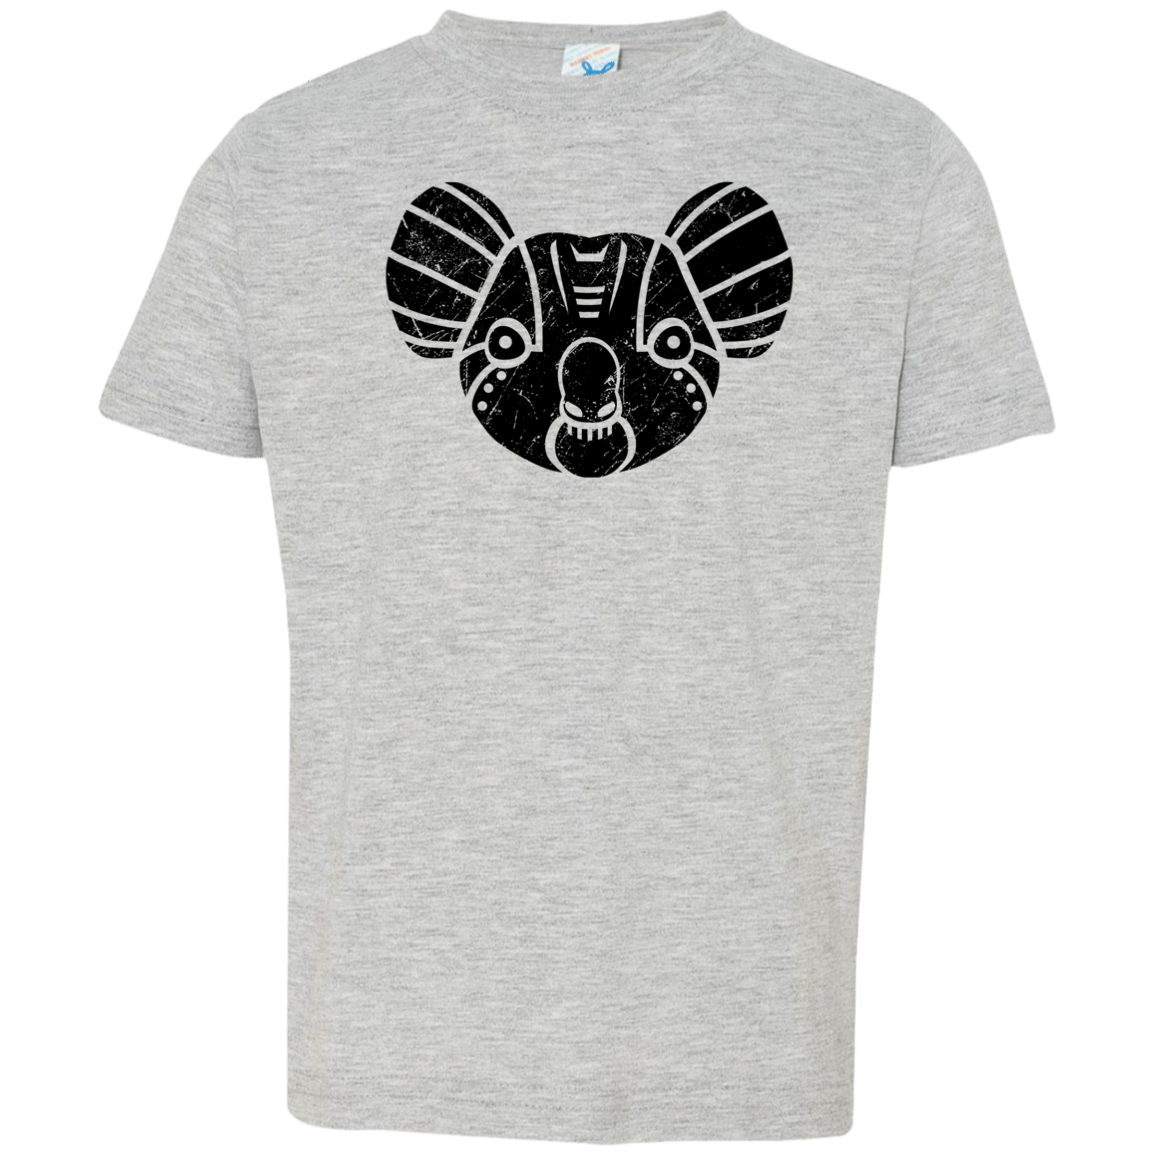 Black Distressed Emblem T-Shirt for Toddlers (Koala/Everest)